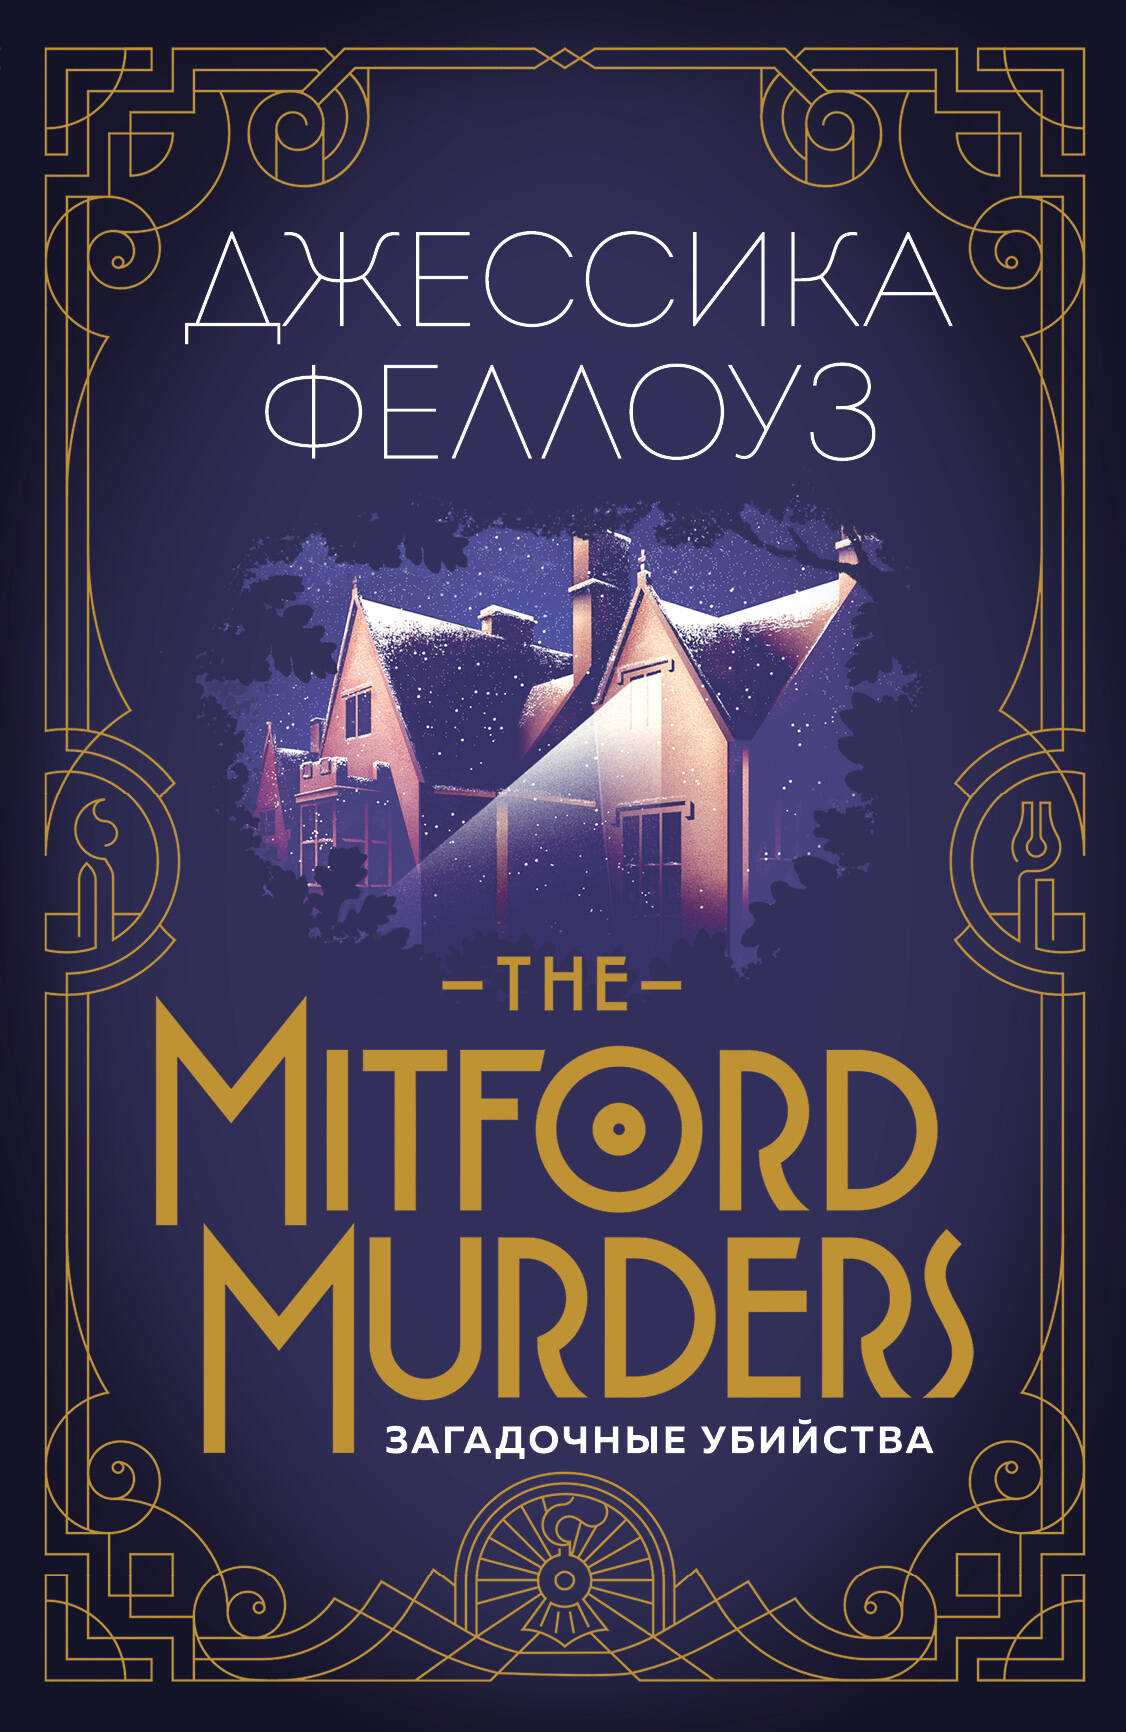 The Mitford murders. Загадочные убийства горовиц энтони дом шелка мориарти романы рассказ